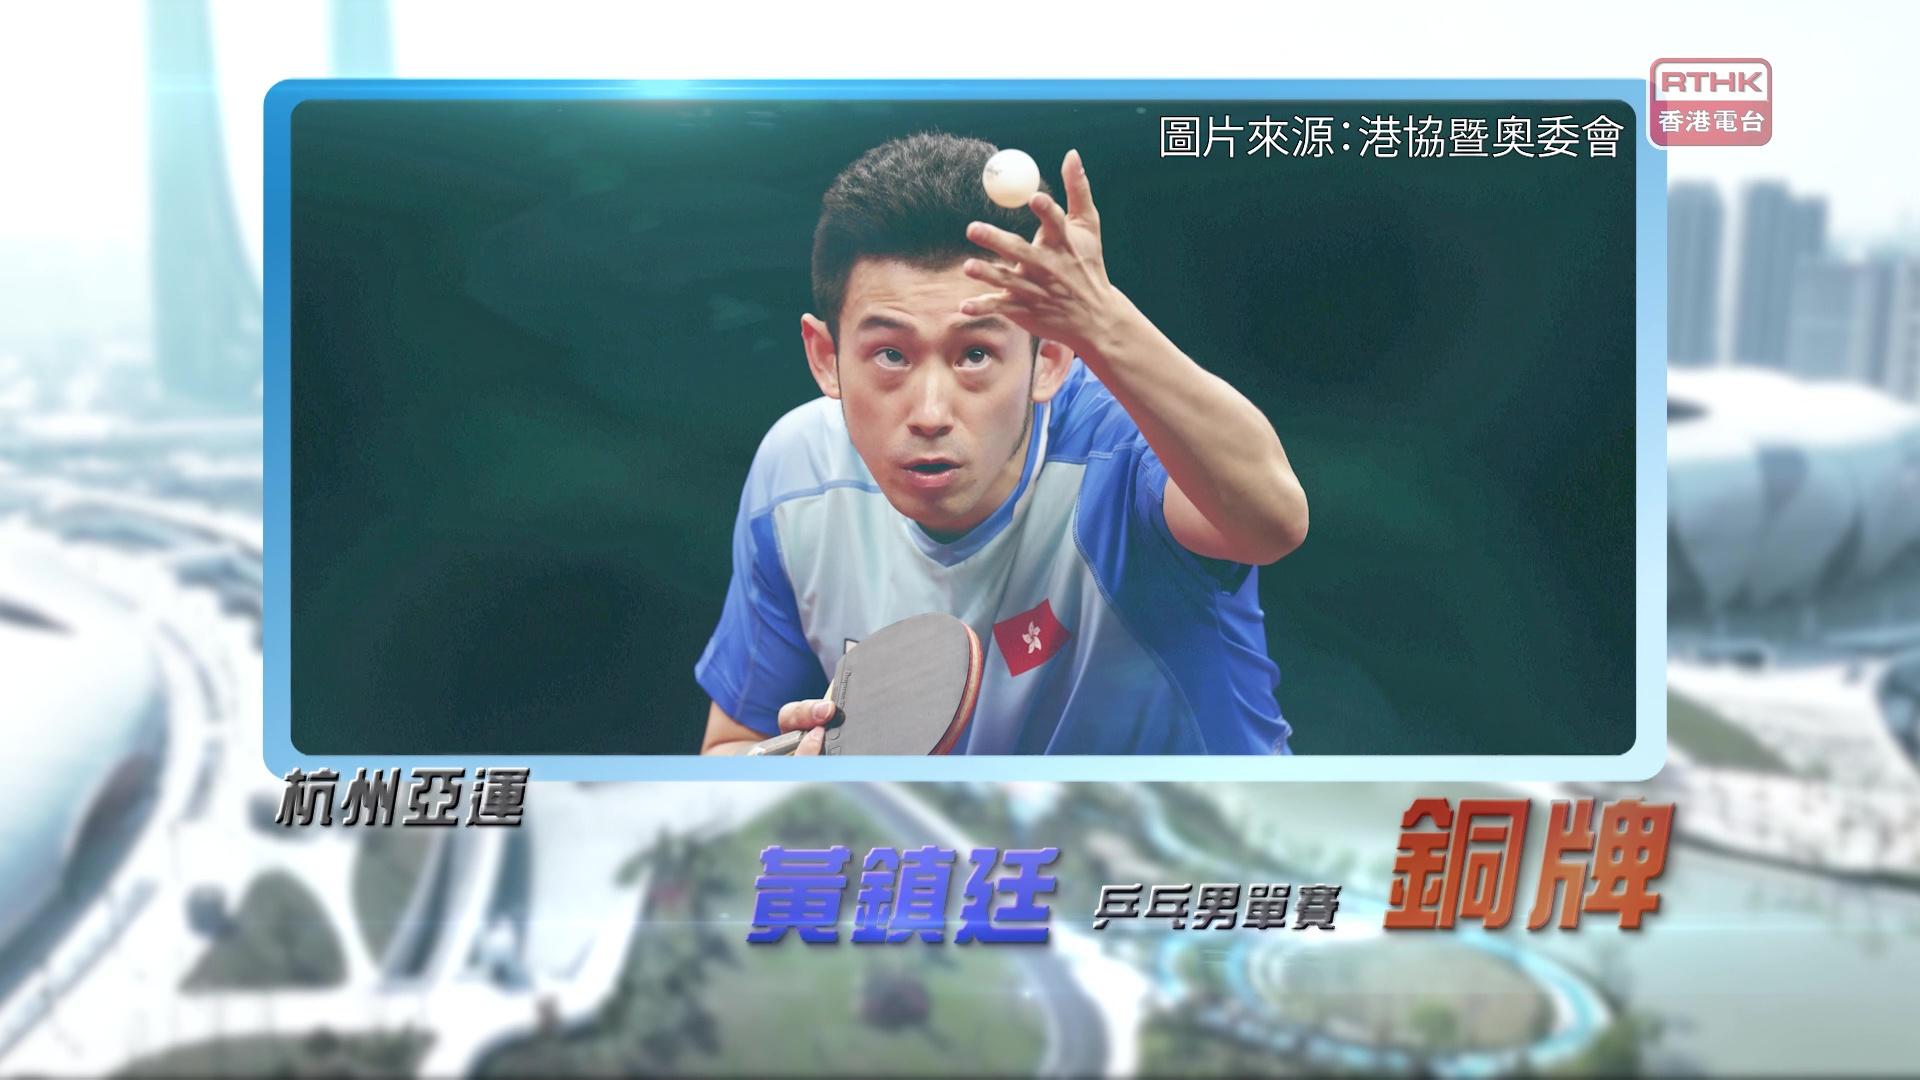 恭喜香港乒乓代表黃鎮廷獲得銅牌!